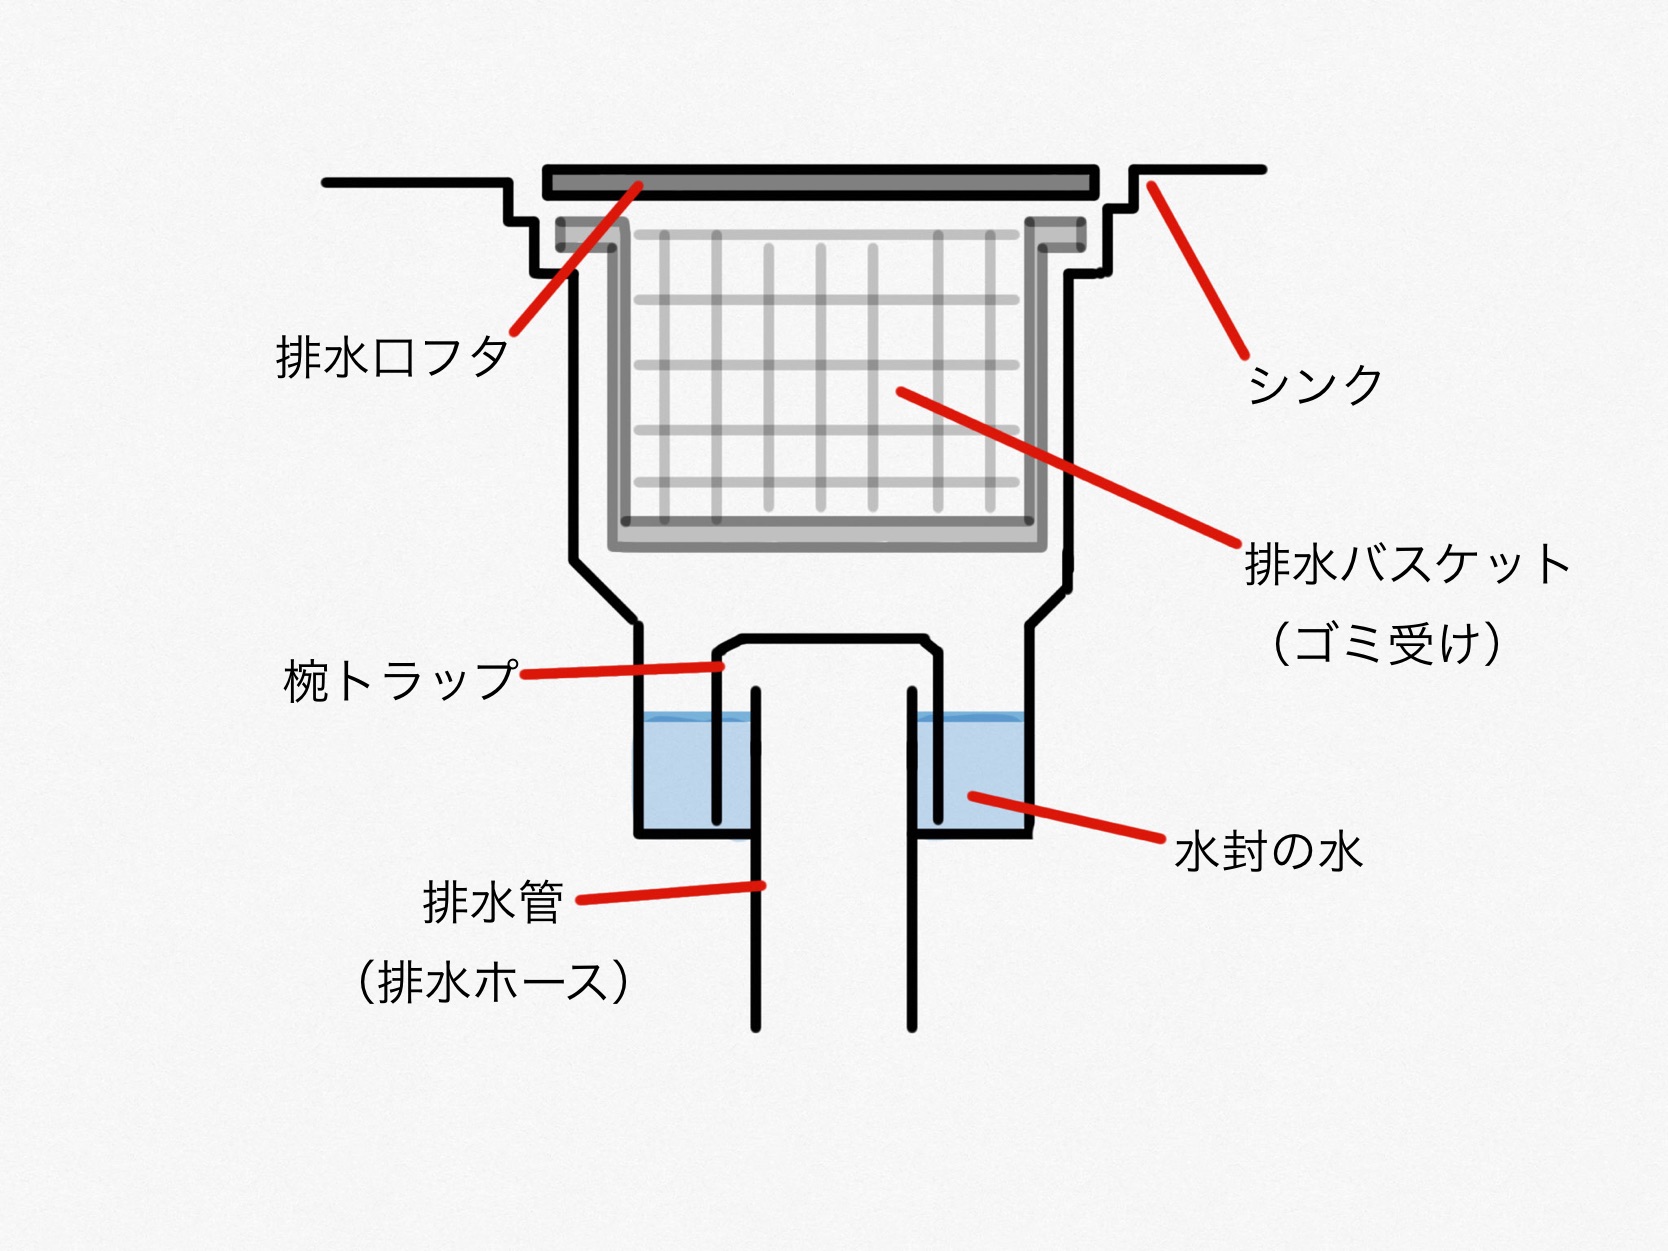 キッチンの排水口の構造